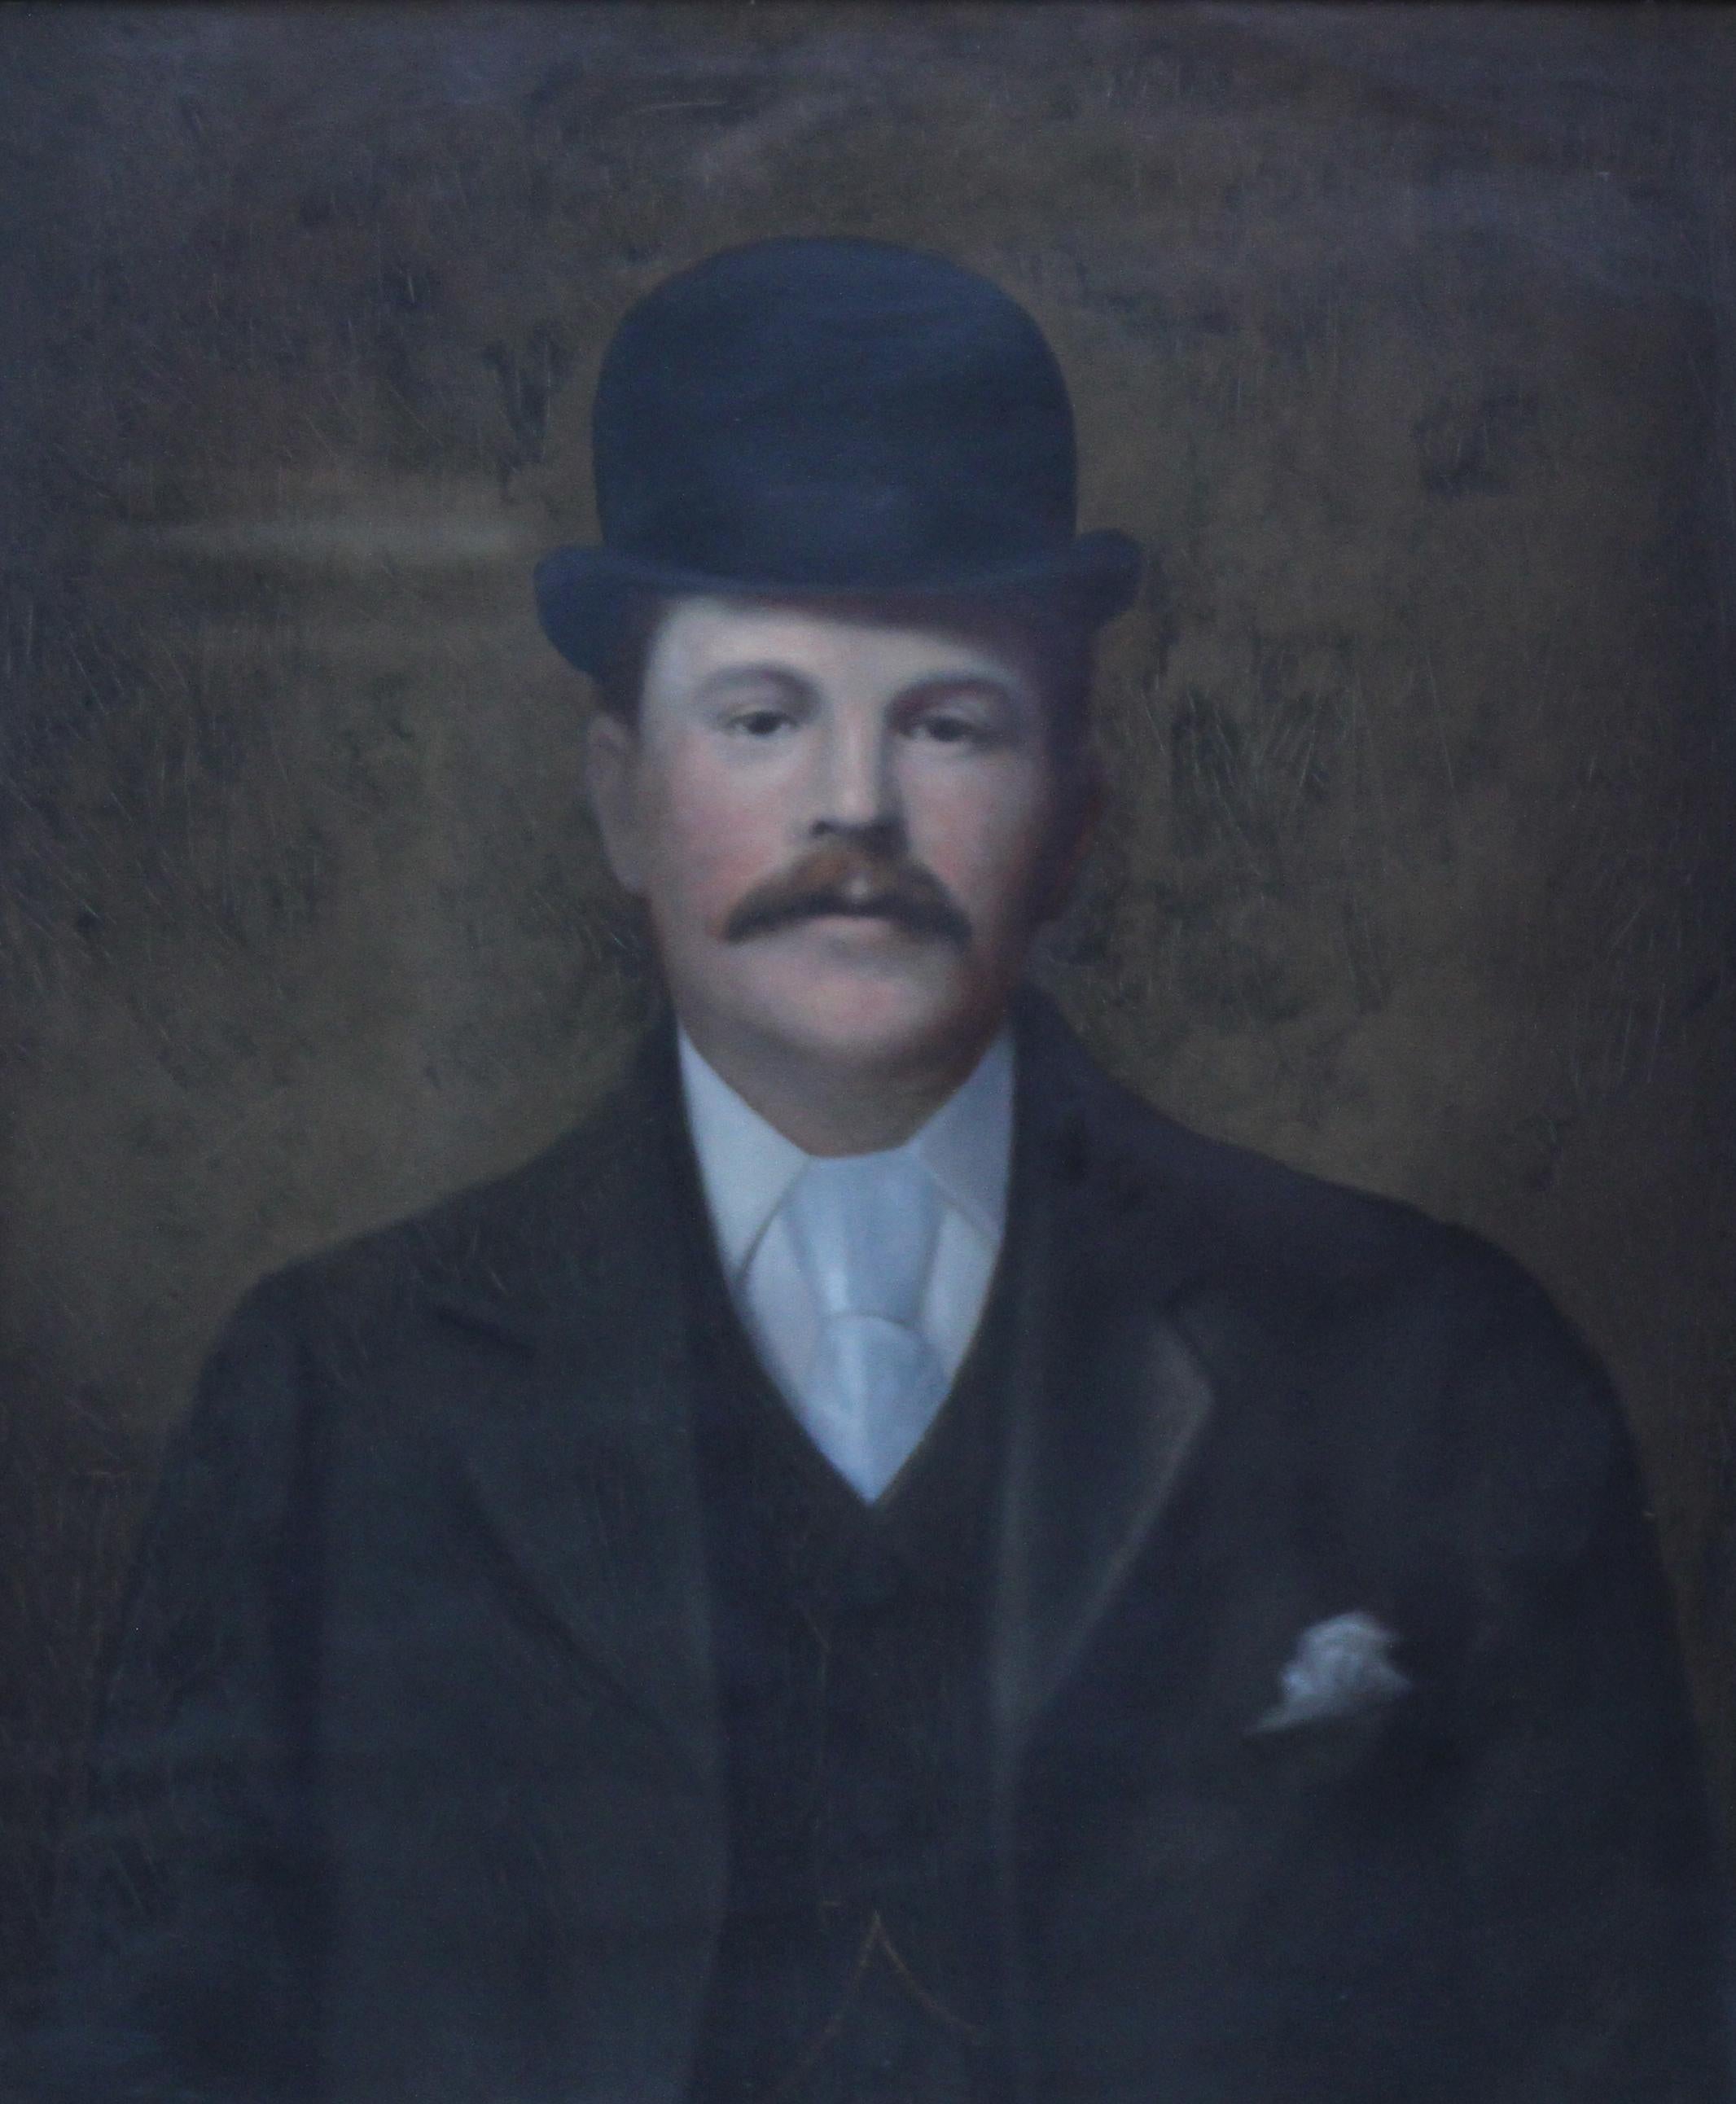 Porträt eines Gentleman in einem Bowlerhut aus dem späten 19. Jahrhundert – Painting von Unknown